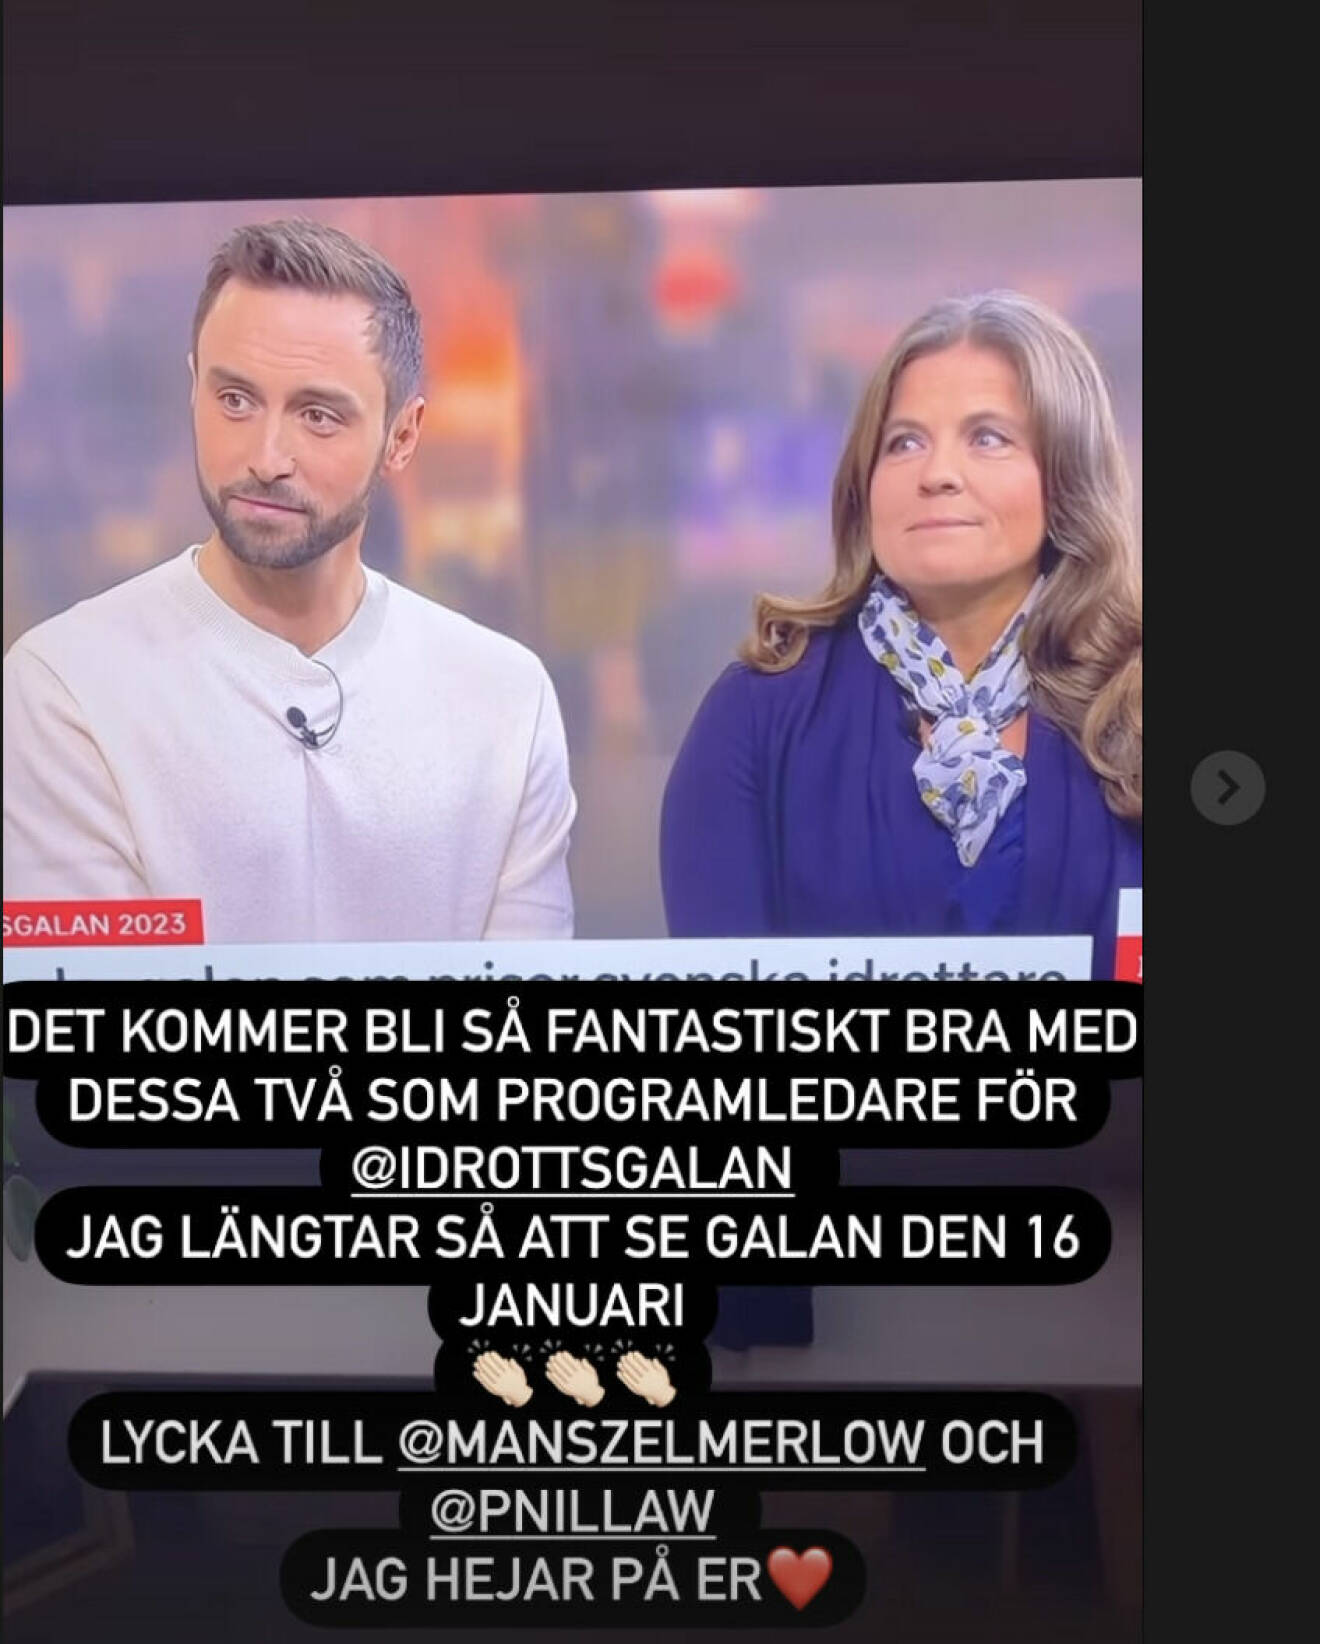 Måns Zelmerlöw och Pernilla Wiberg programleder Idrottsgalan 2023